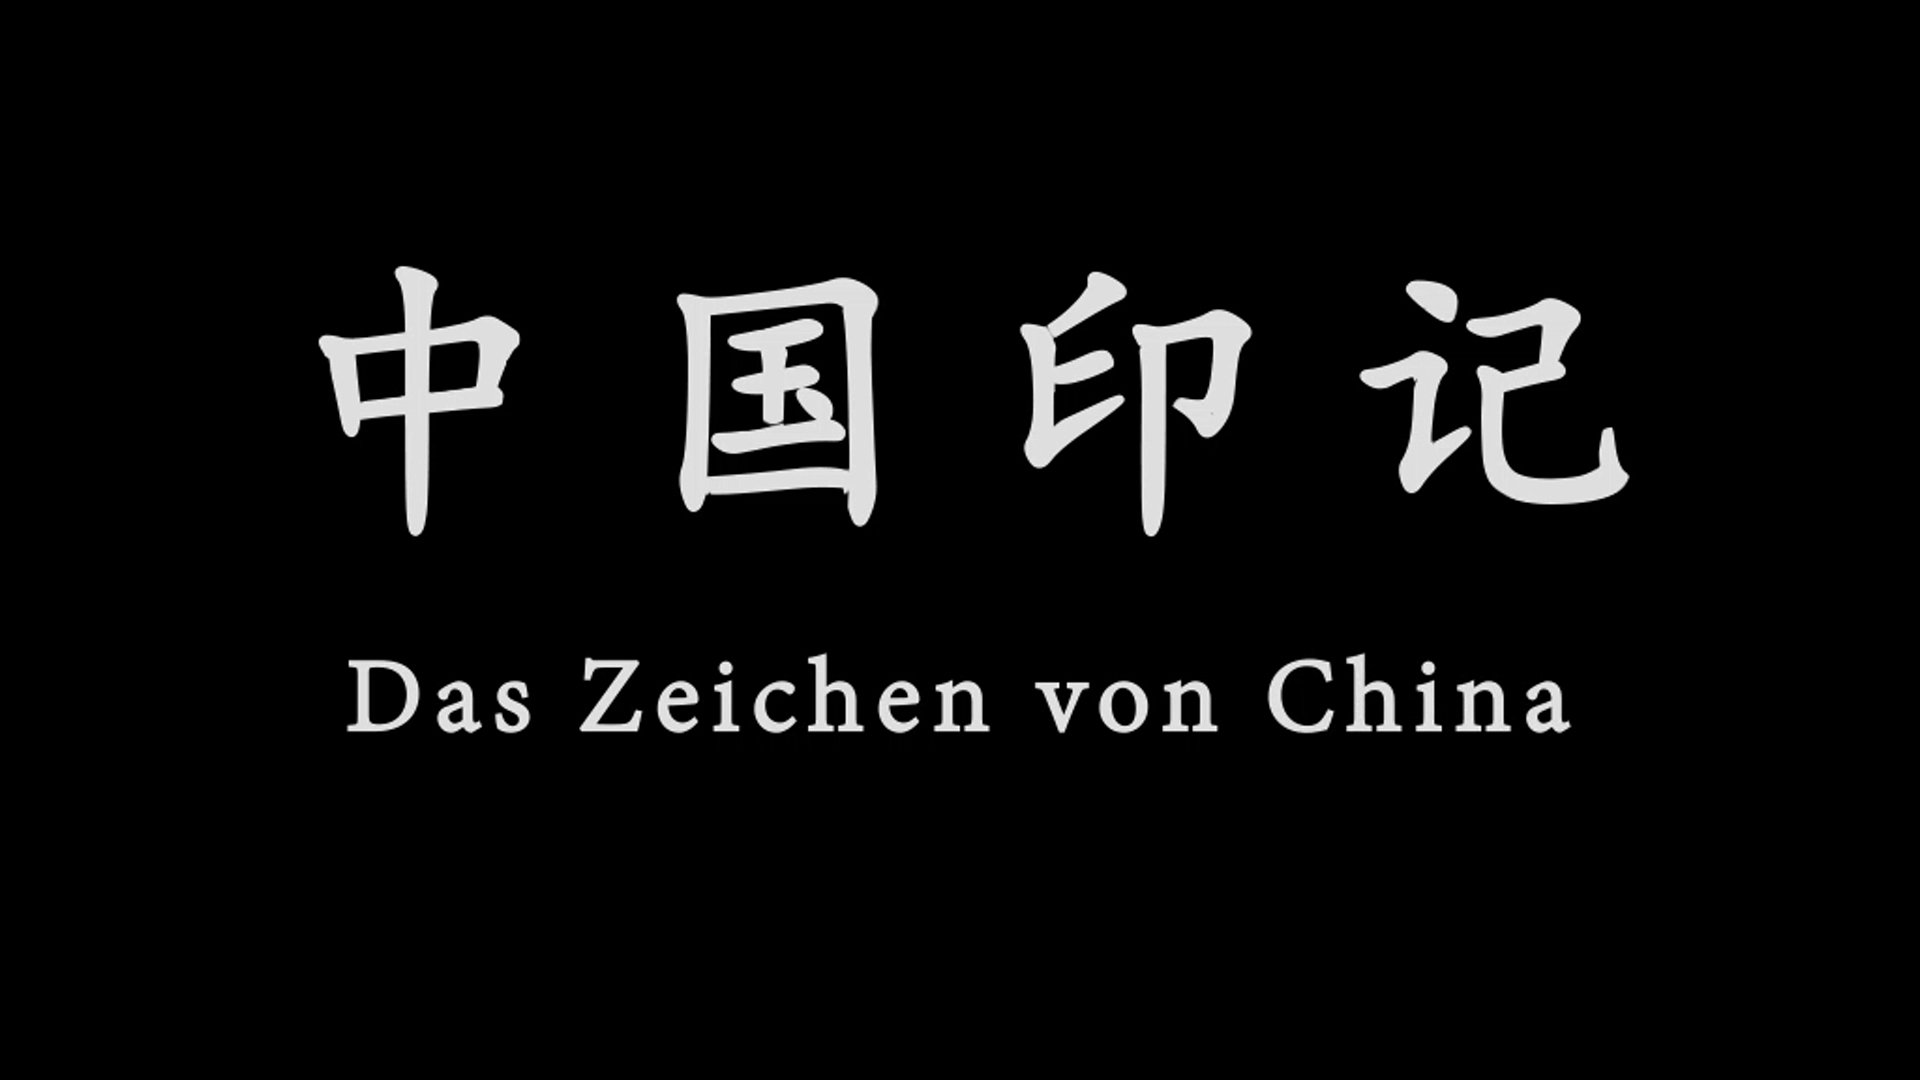 第一届大学生德语微视频大赛优胜奖 中国印记